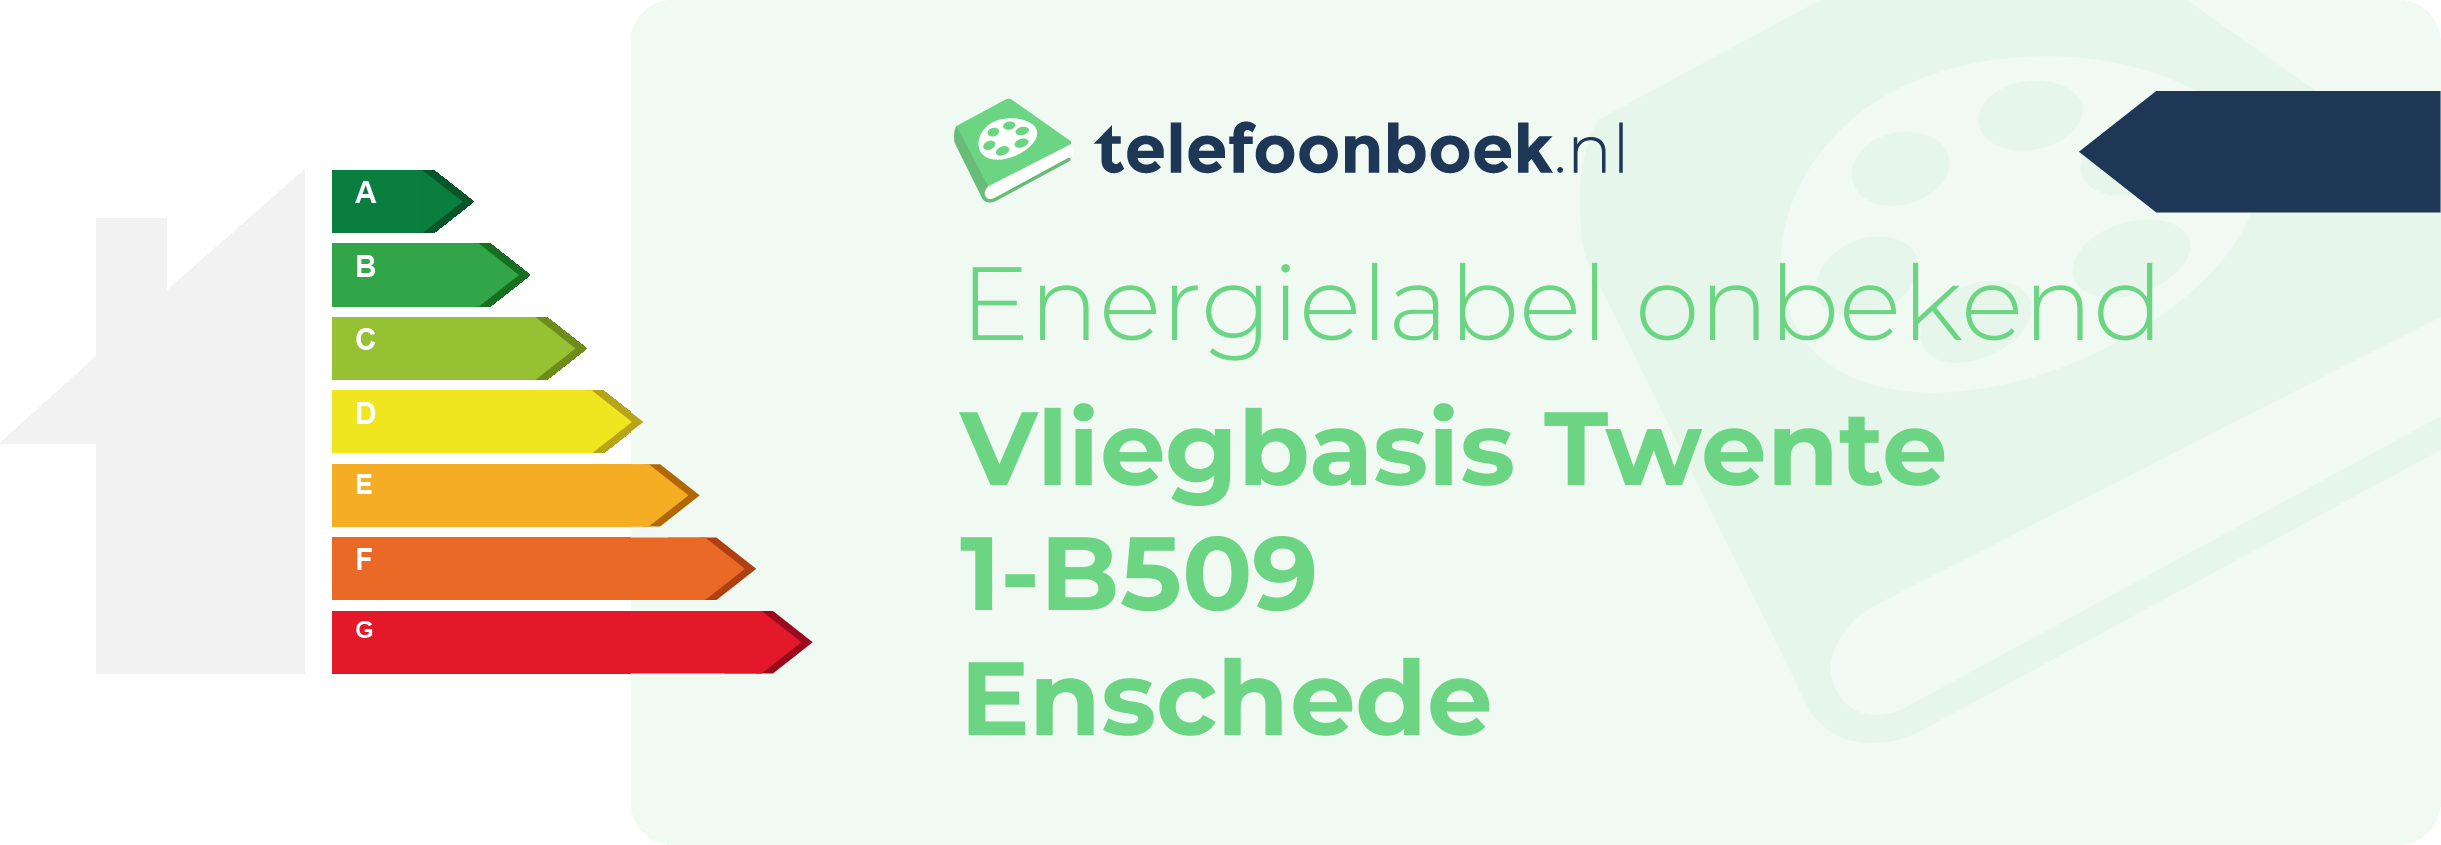 Energielabel Vliegbasis Twente 1-B509 Enschede